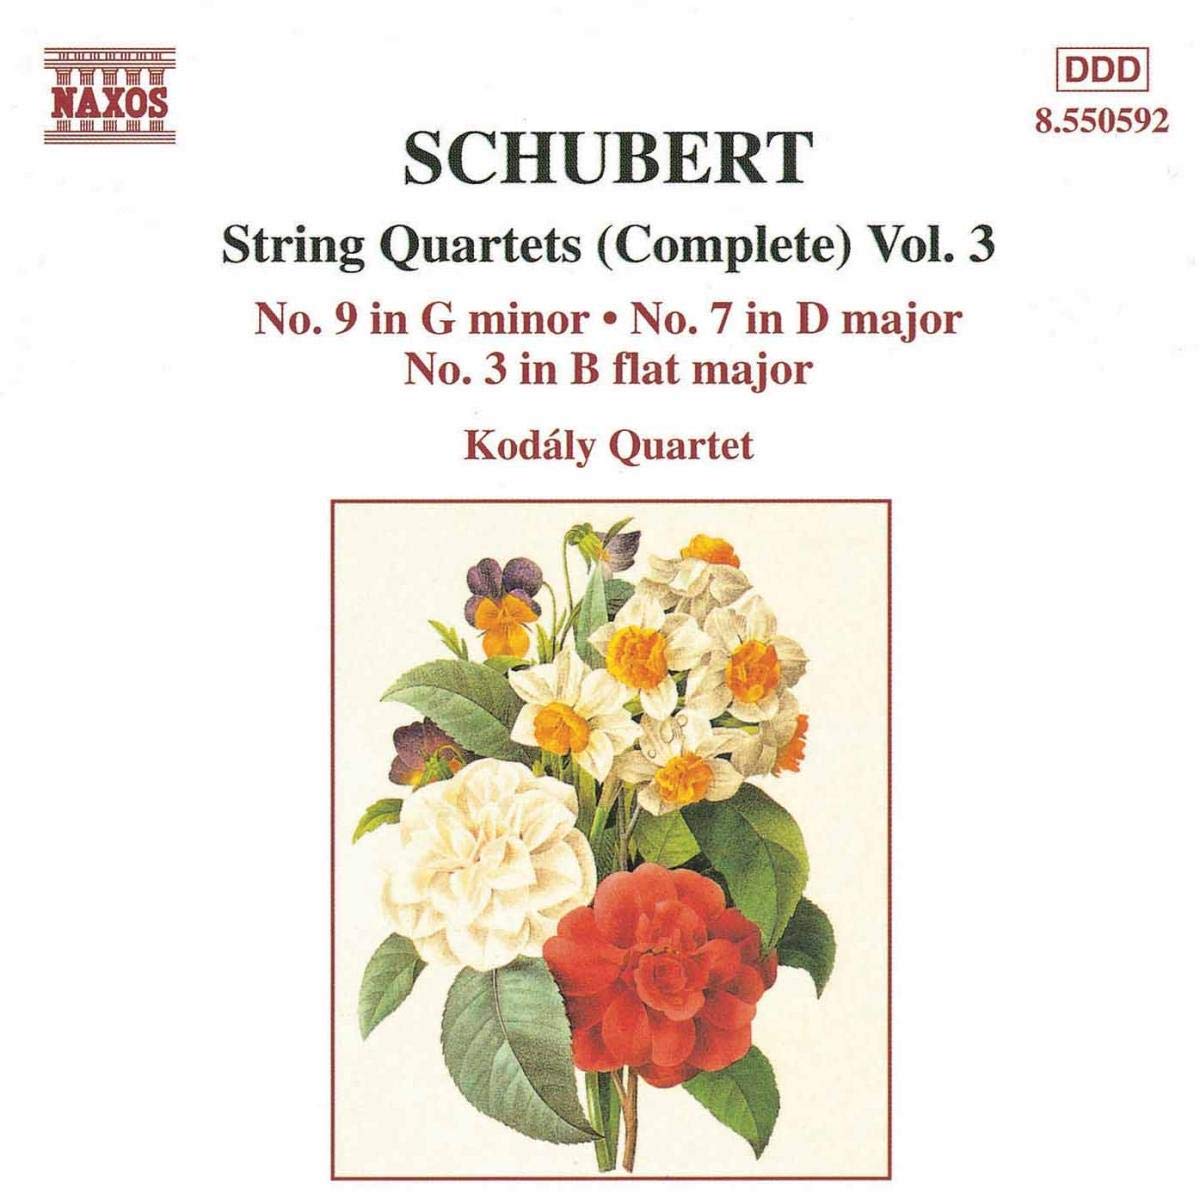 SCHUBERT: String Quartets vol. 3